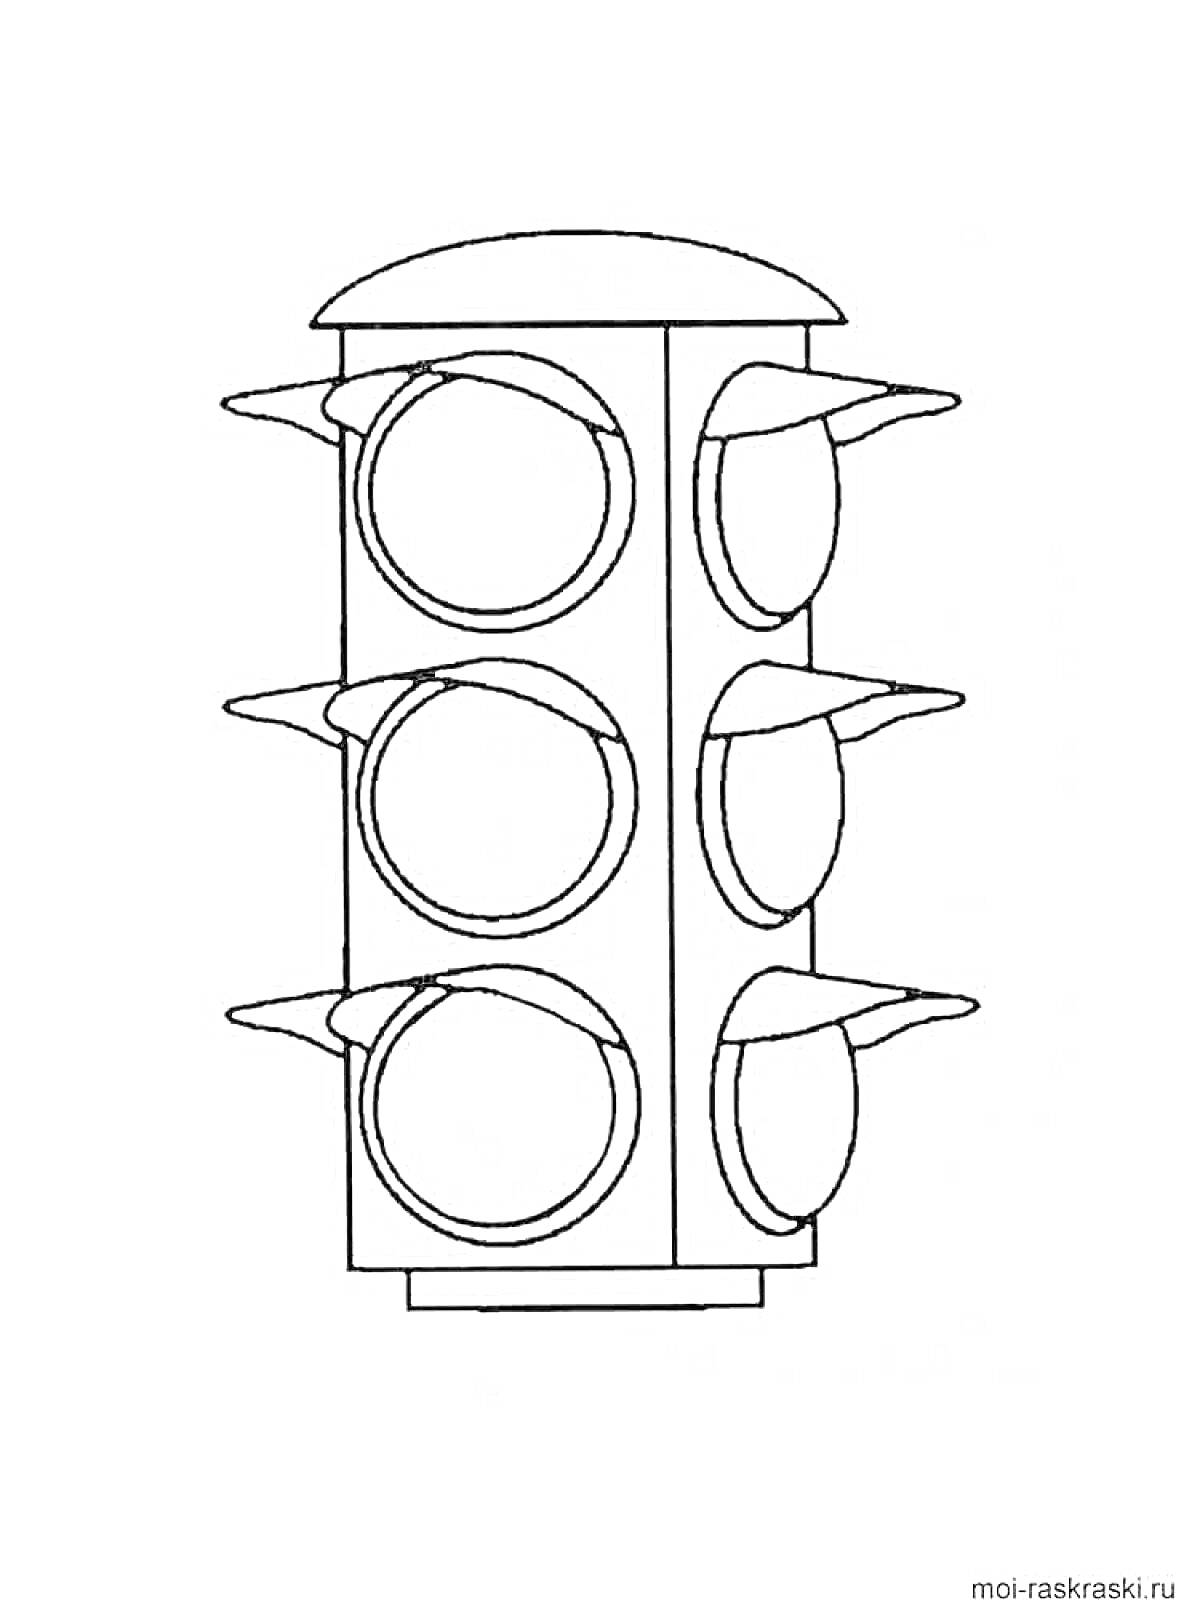 Раскраска Светофор с тремя секциями на каждом из двух сторон